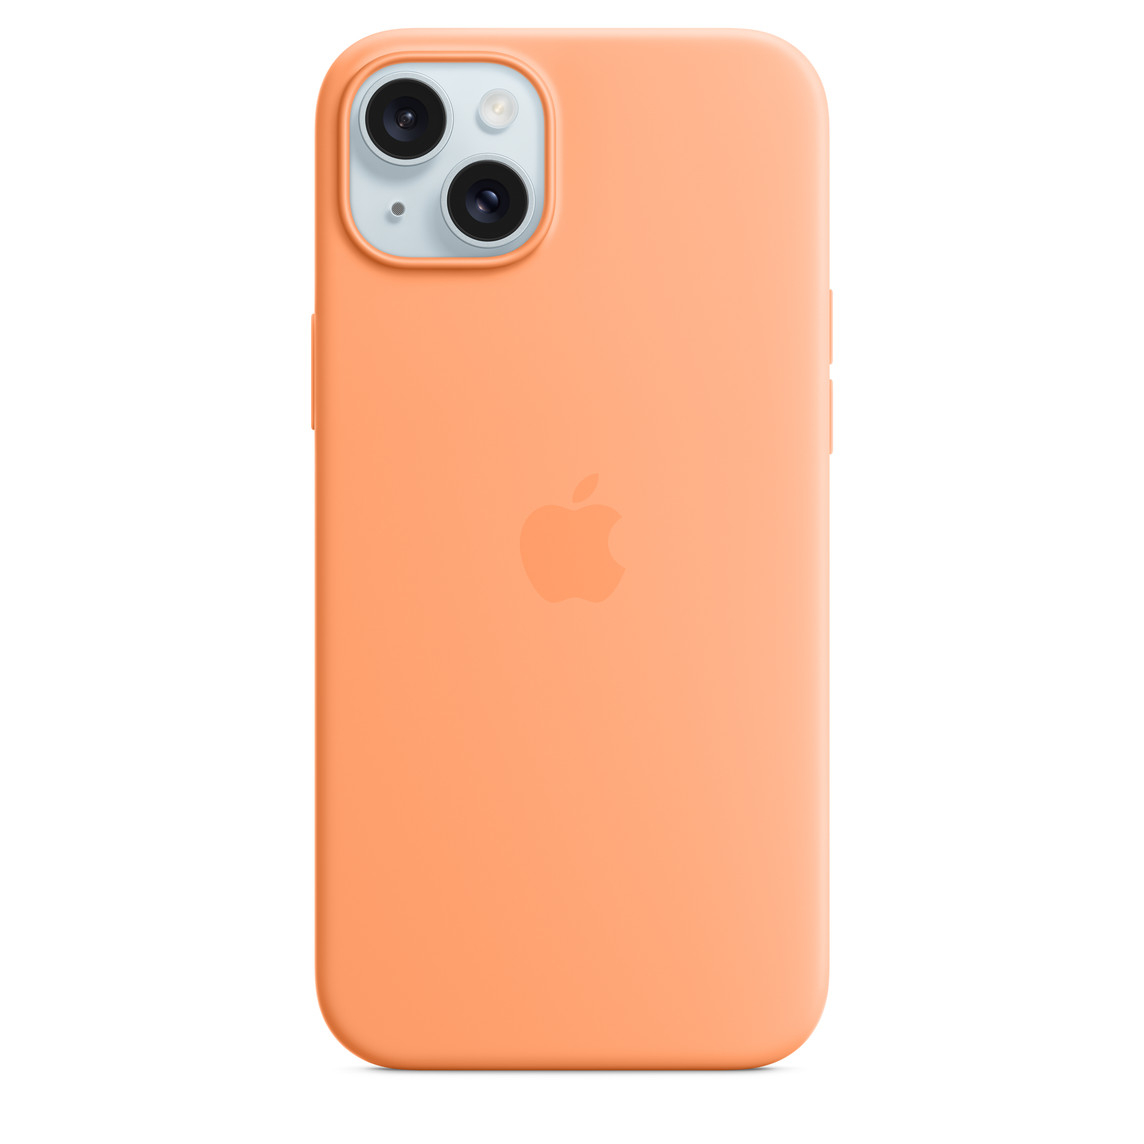 Comprar Funda iPhone SE - Dual Mate - Verde+Naranja